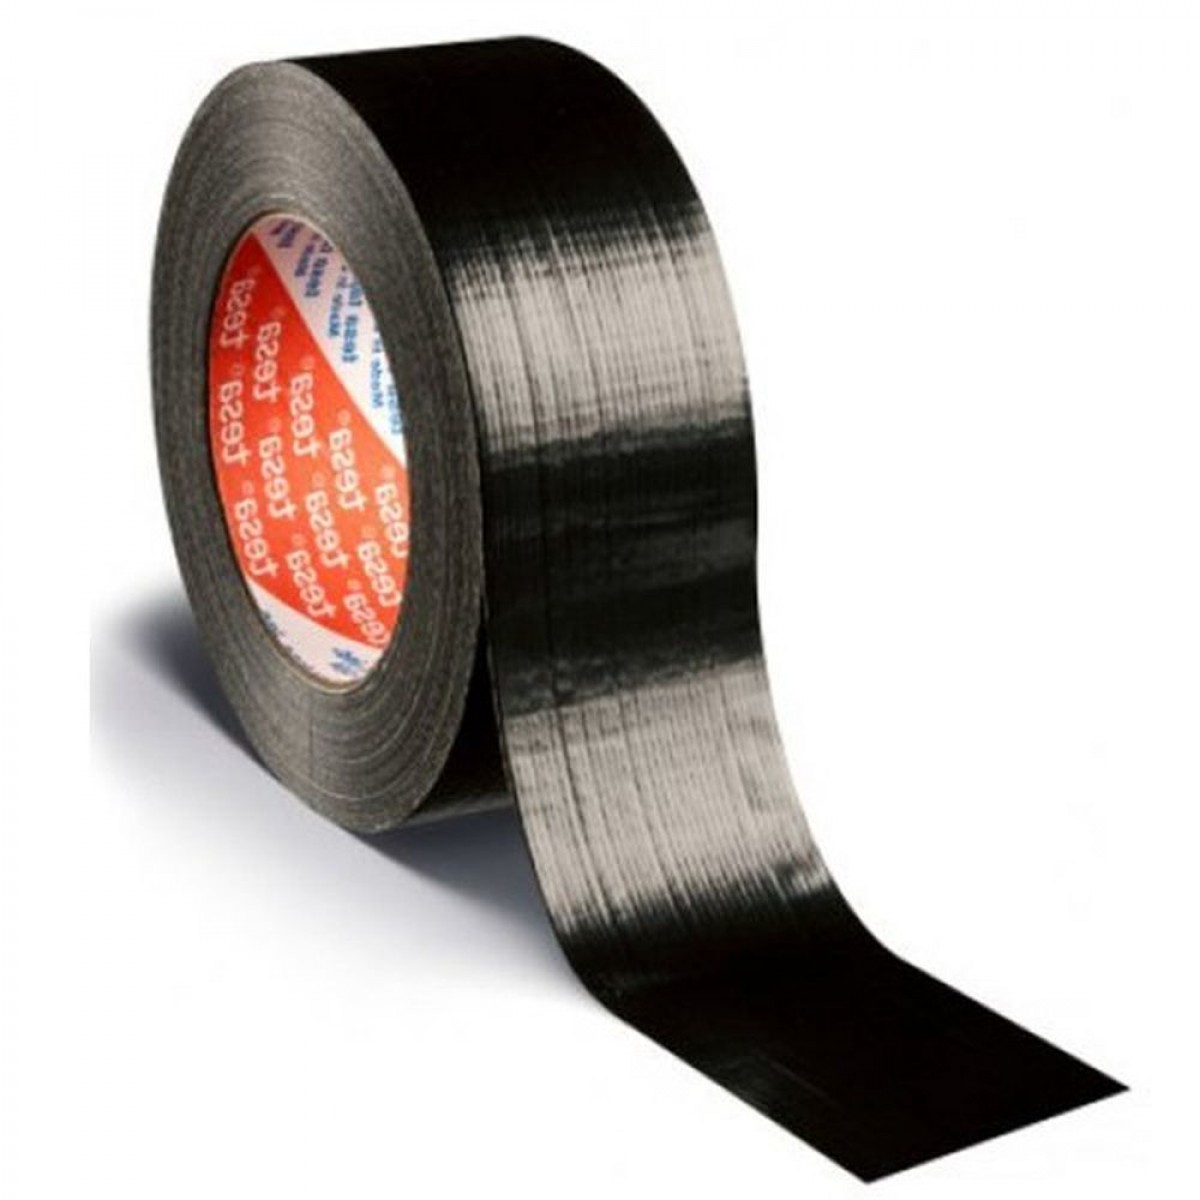 Haringen Verkleuren Bedreven tesa® 4613 Duct-tape Zwart L50m B48mm Kopen Online | Bouwkampioen